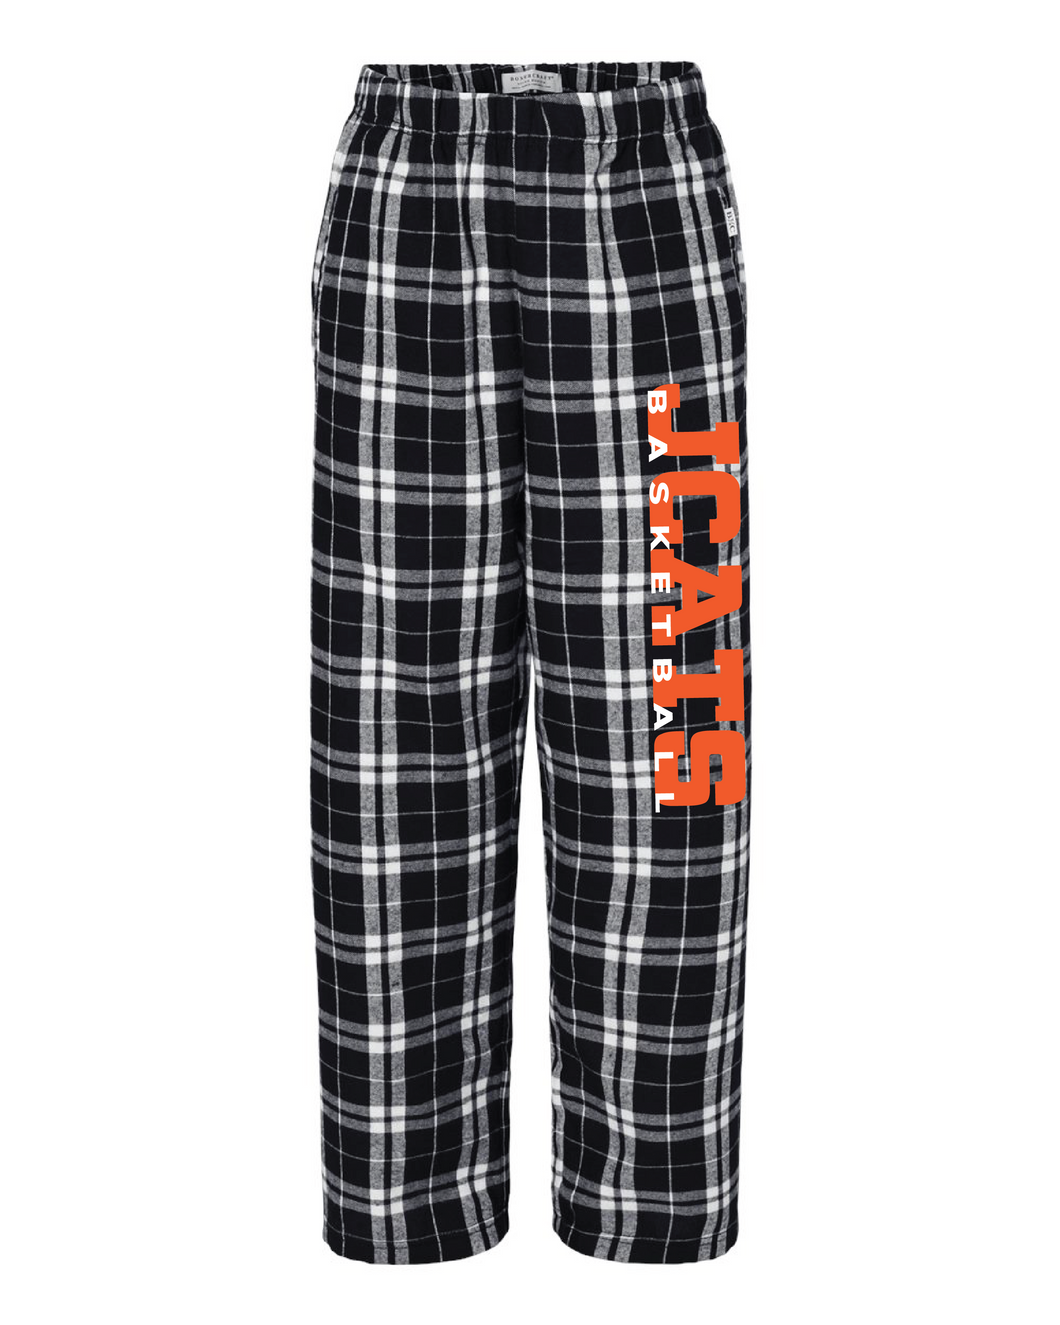 Basketball Pajama Pants